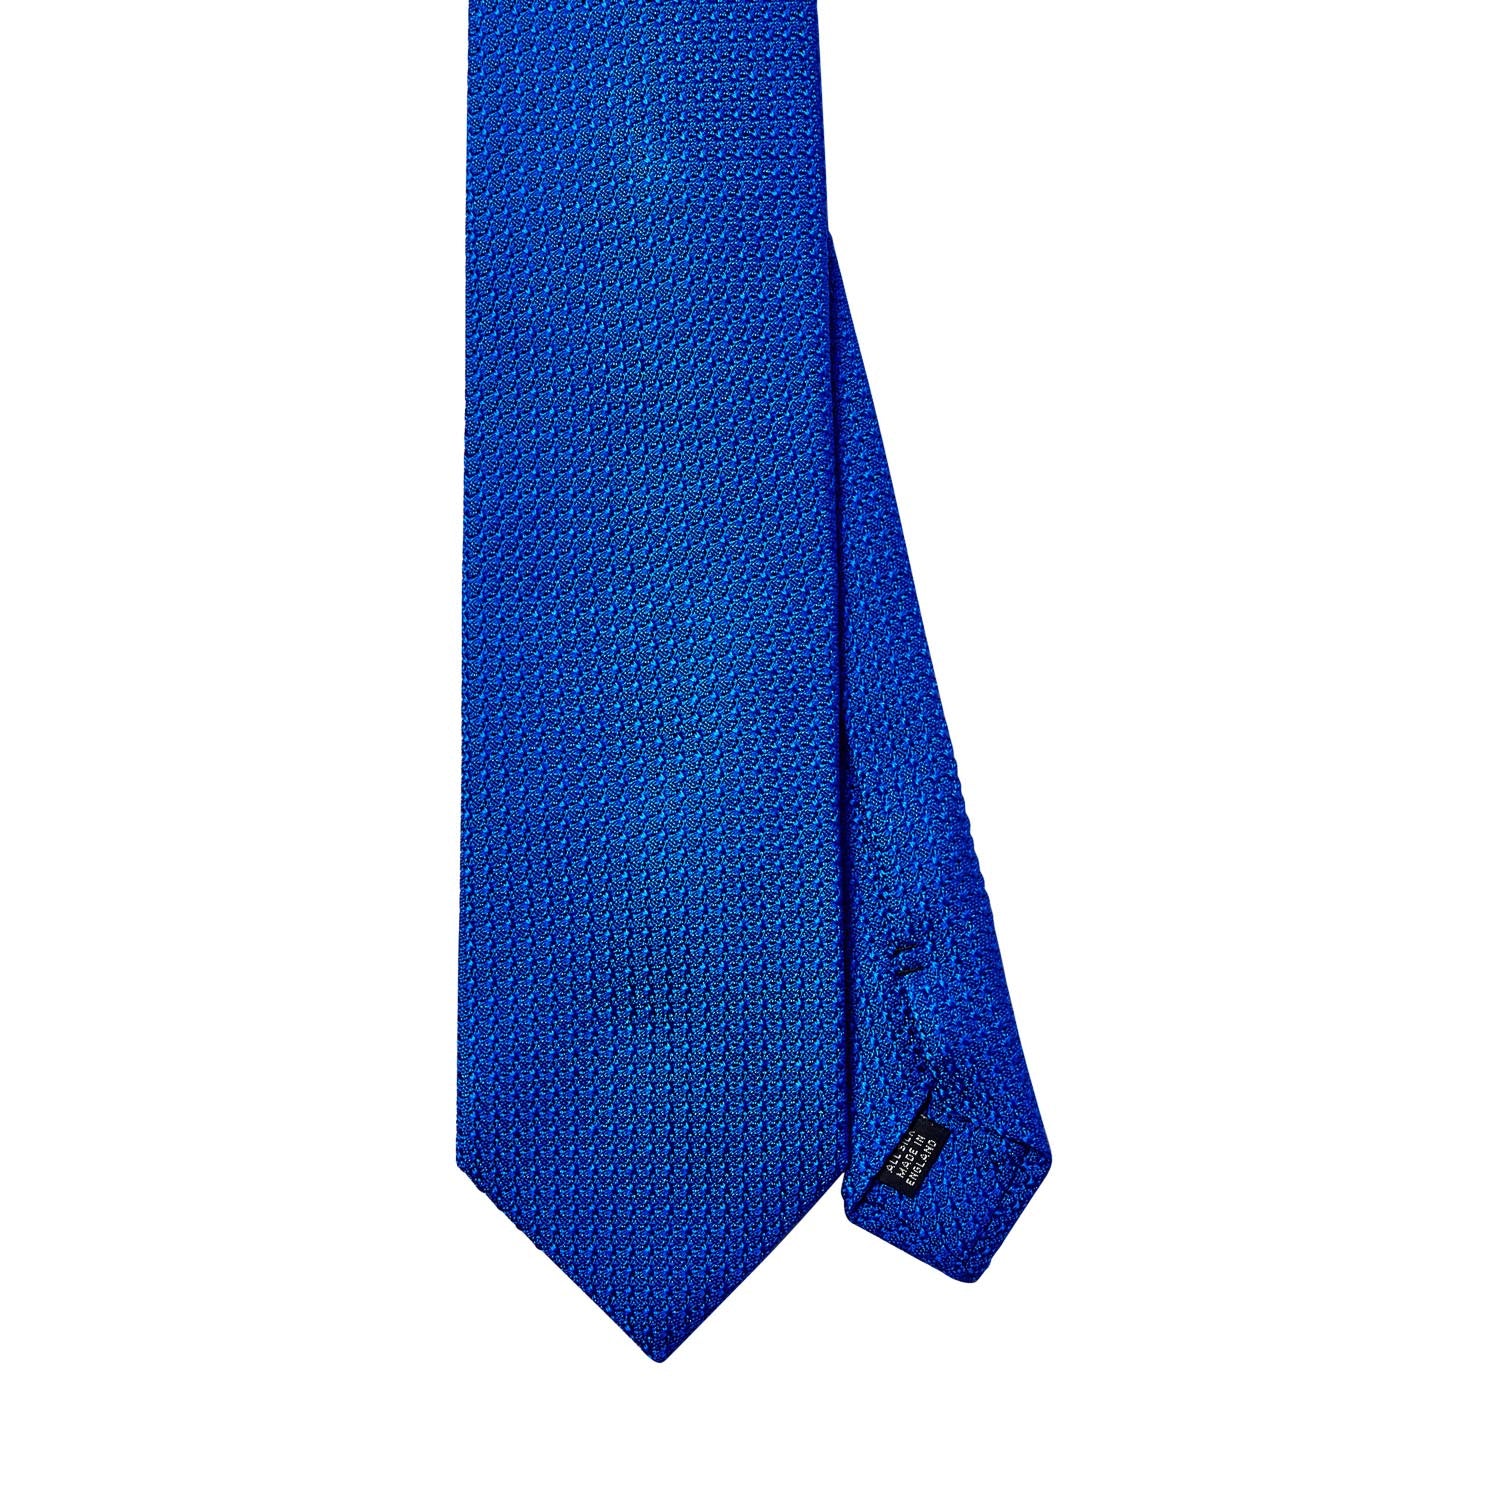 Sovereign Grade Bright Blue Grenadine Grossa Tie